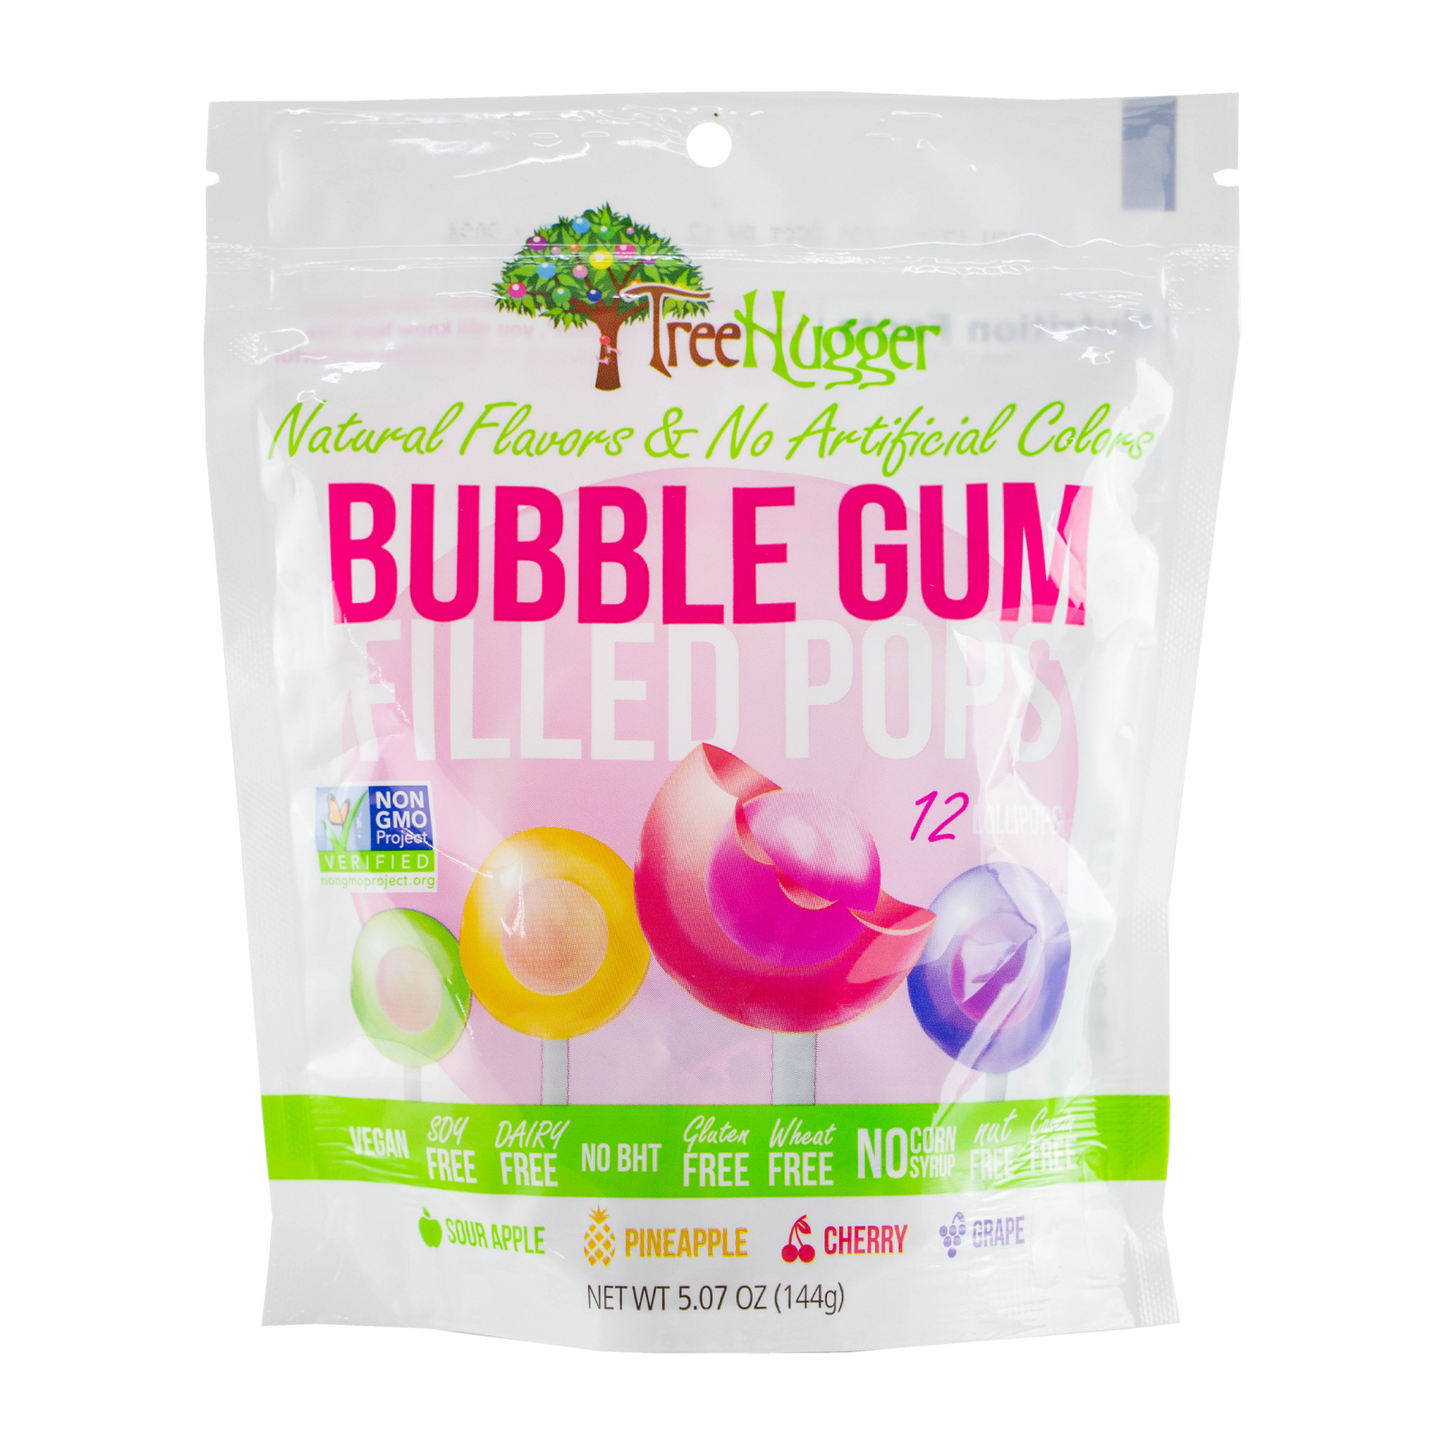 Tree Hugger - Bubble Gum Filled Pops